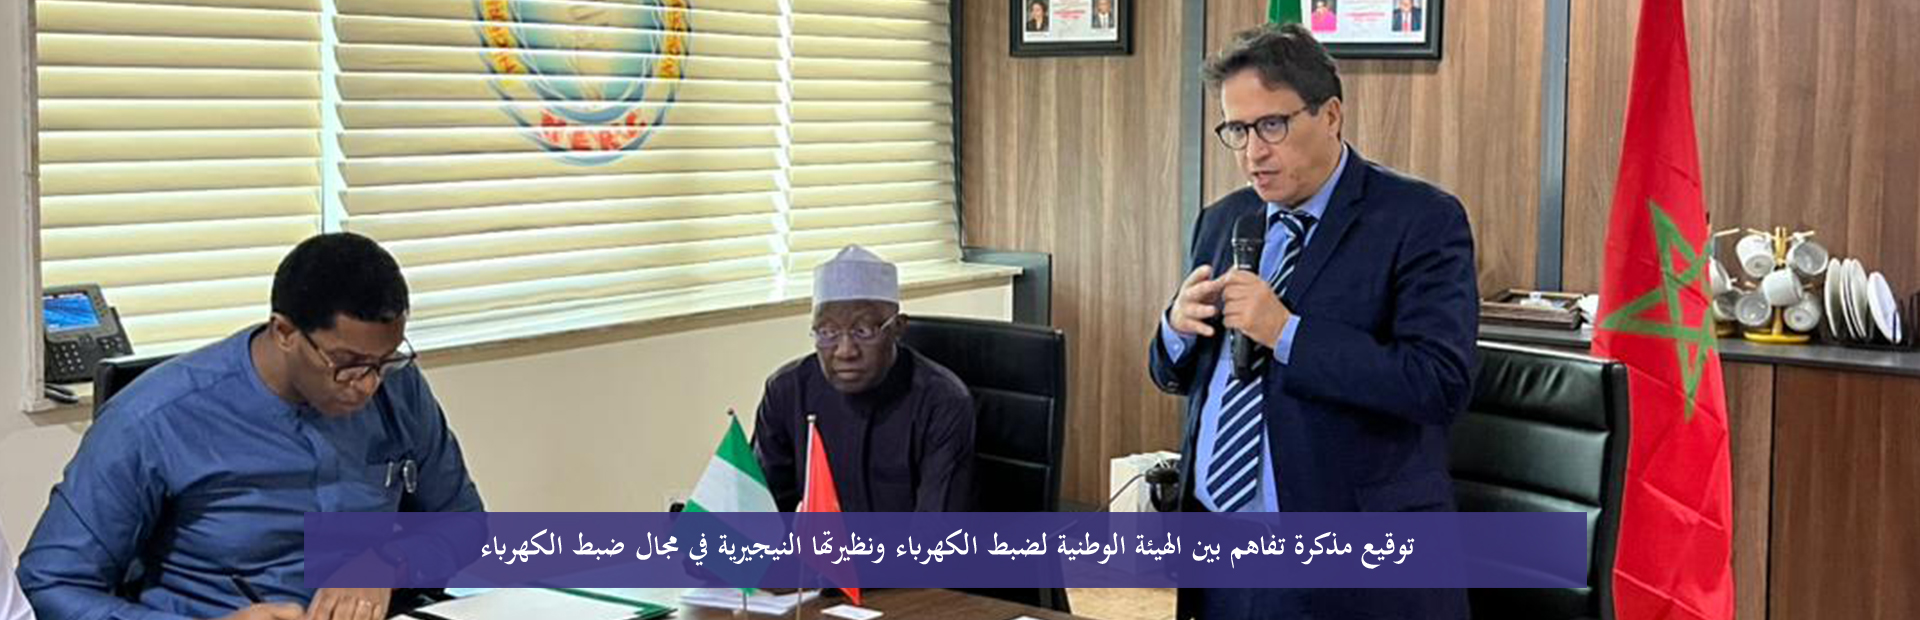 توقيع مذكرة تفاهم بين المغرب و نيجيريا في مجال ضبط الكهرباء